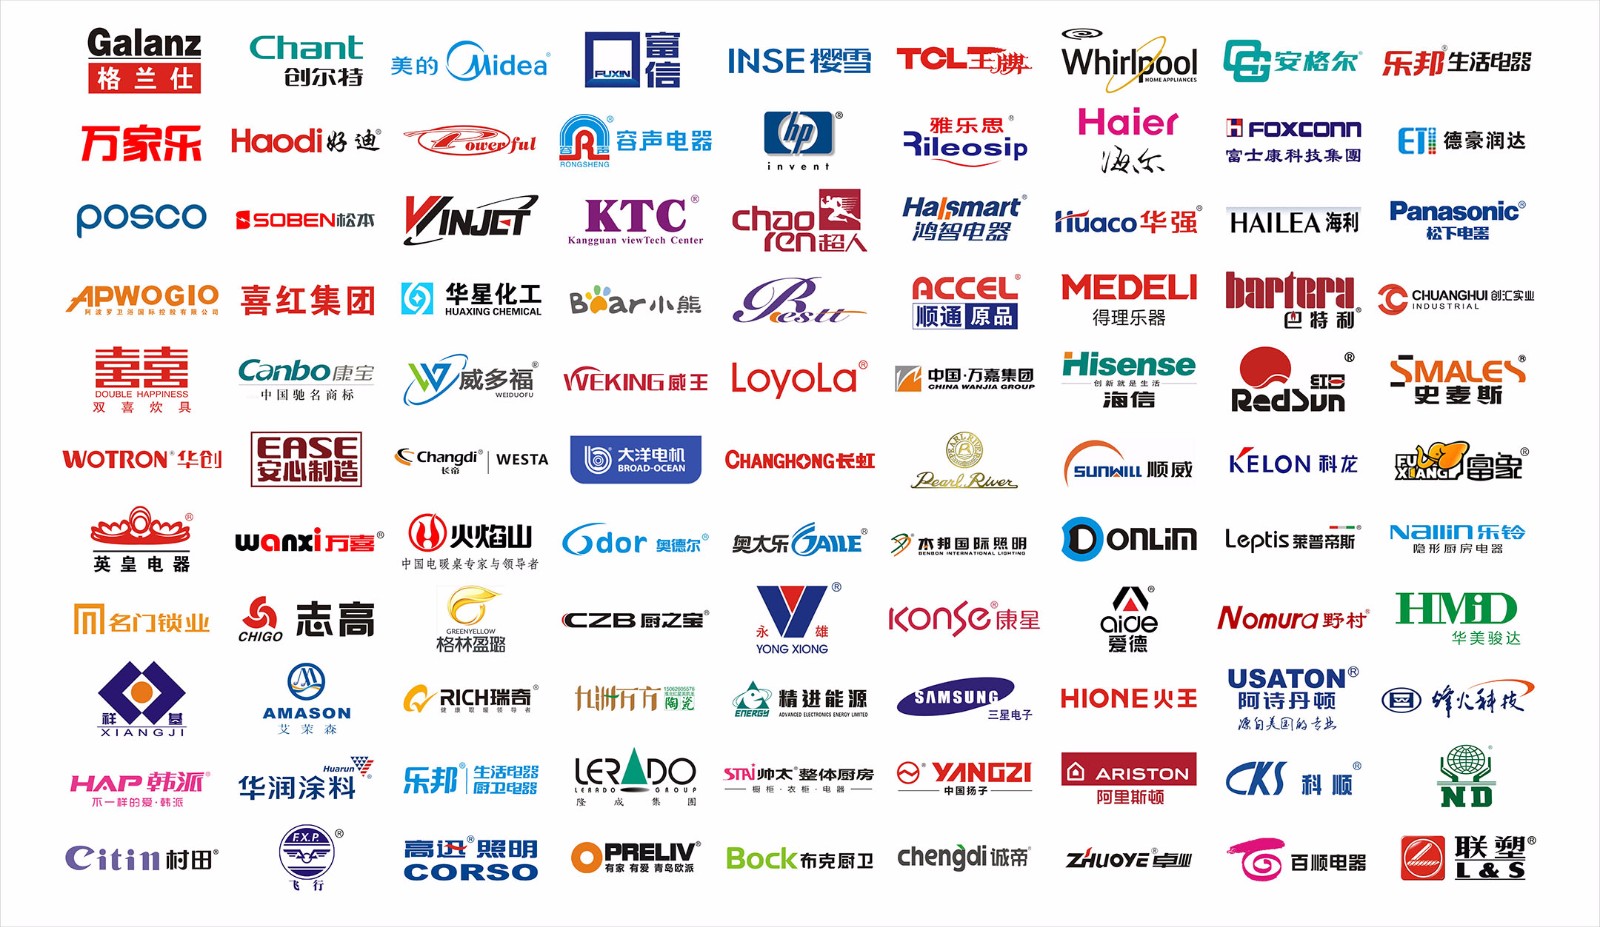 中国体育平台(中国)集团有限公司官网包装合作伙伴.jpg